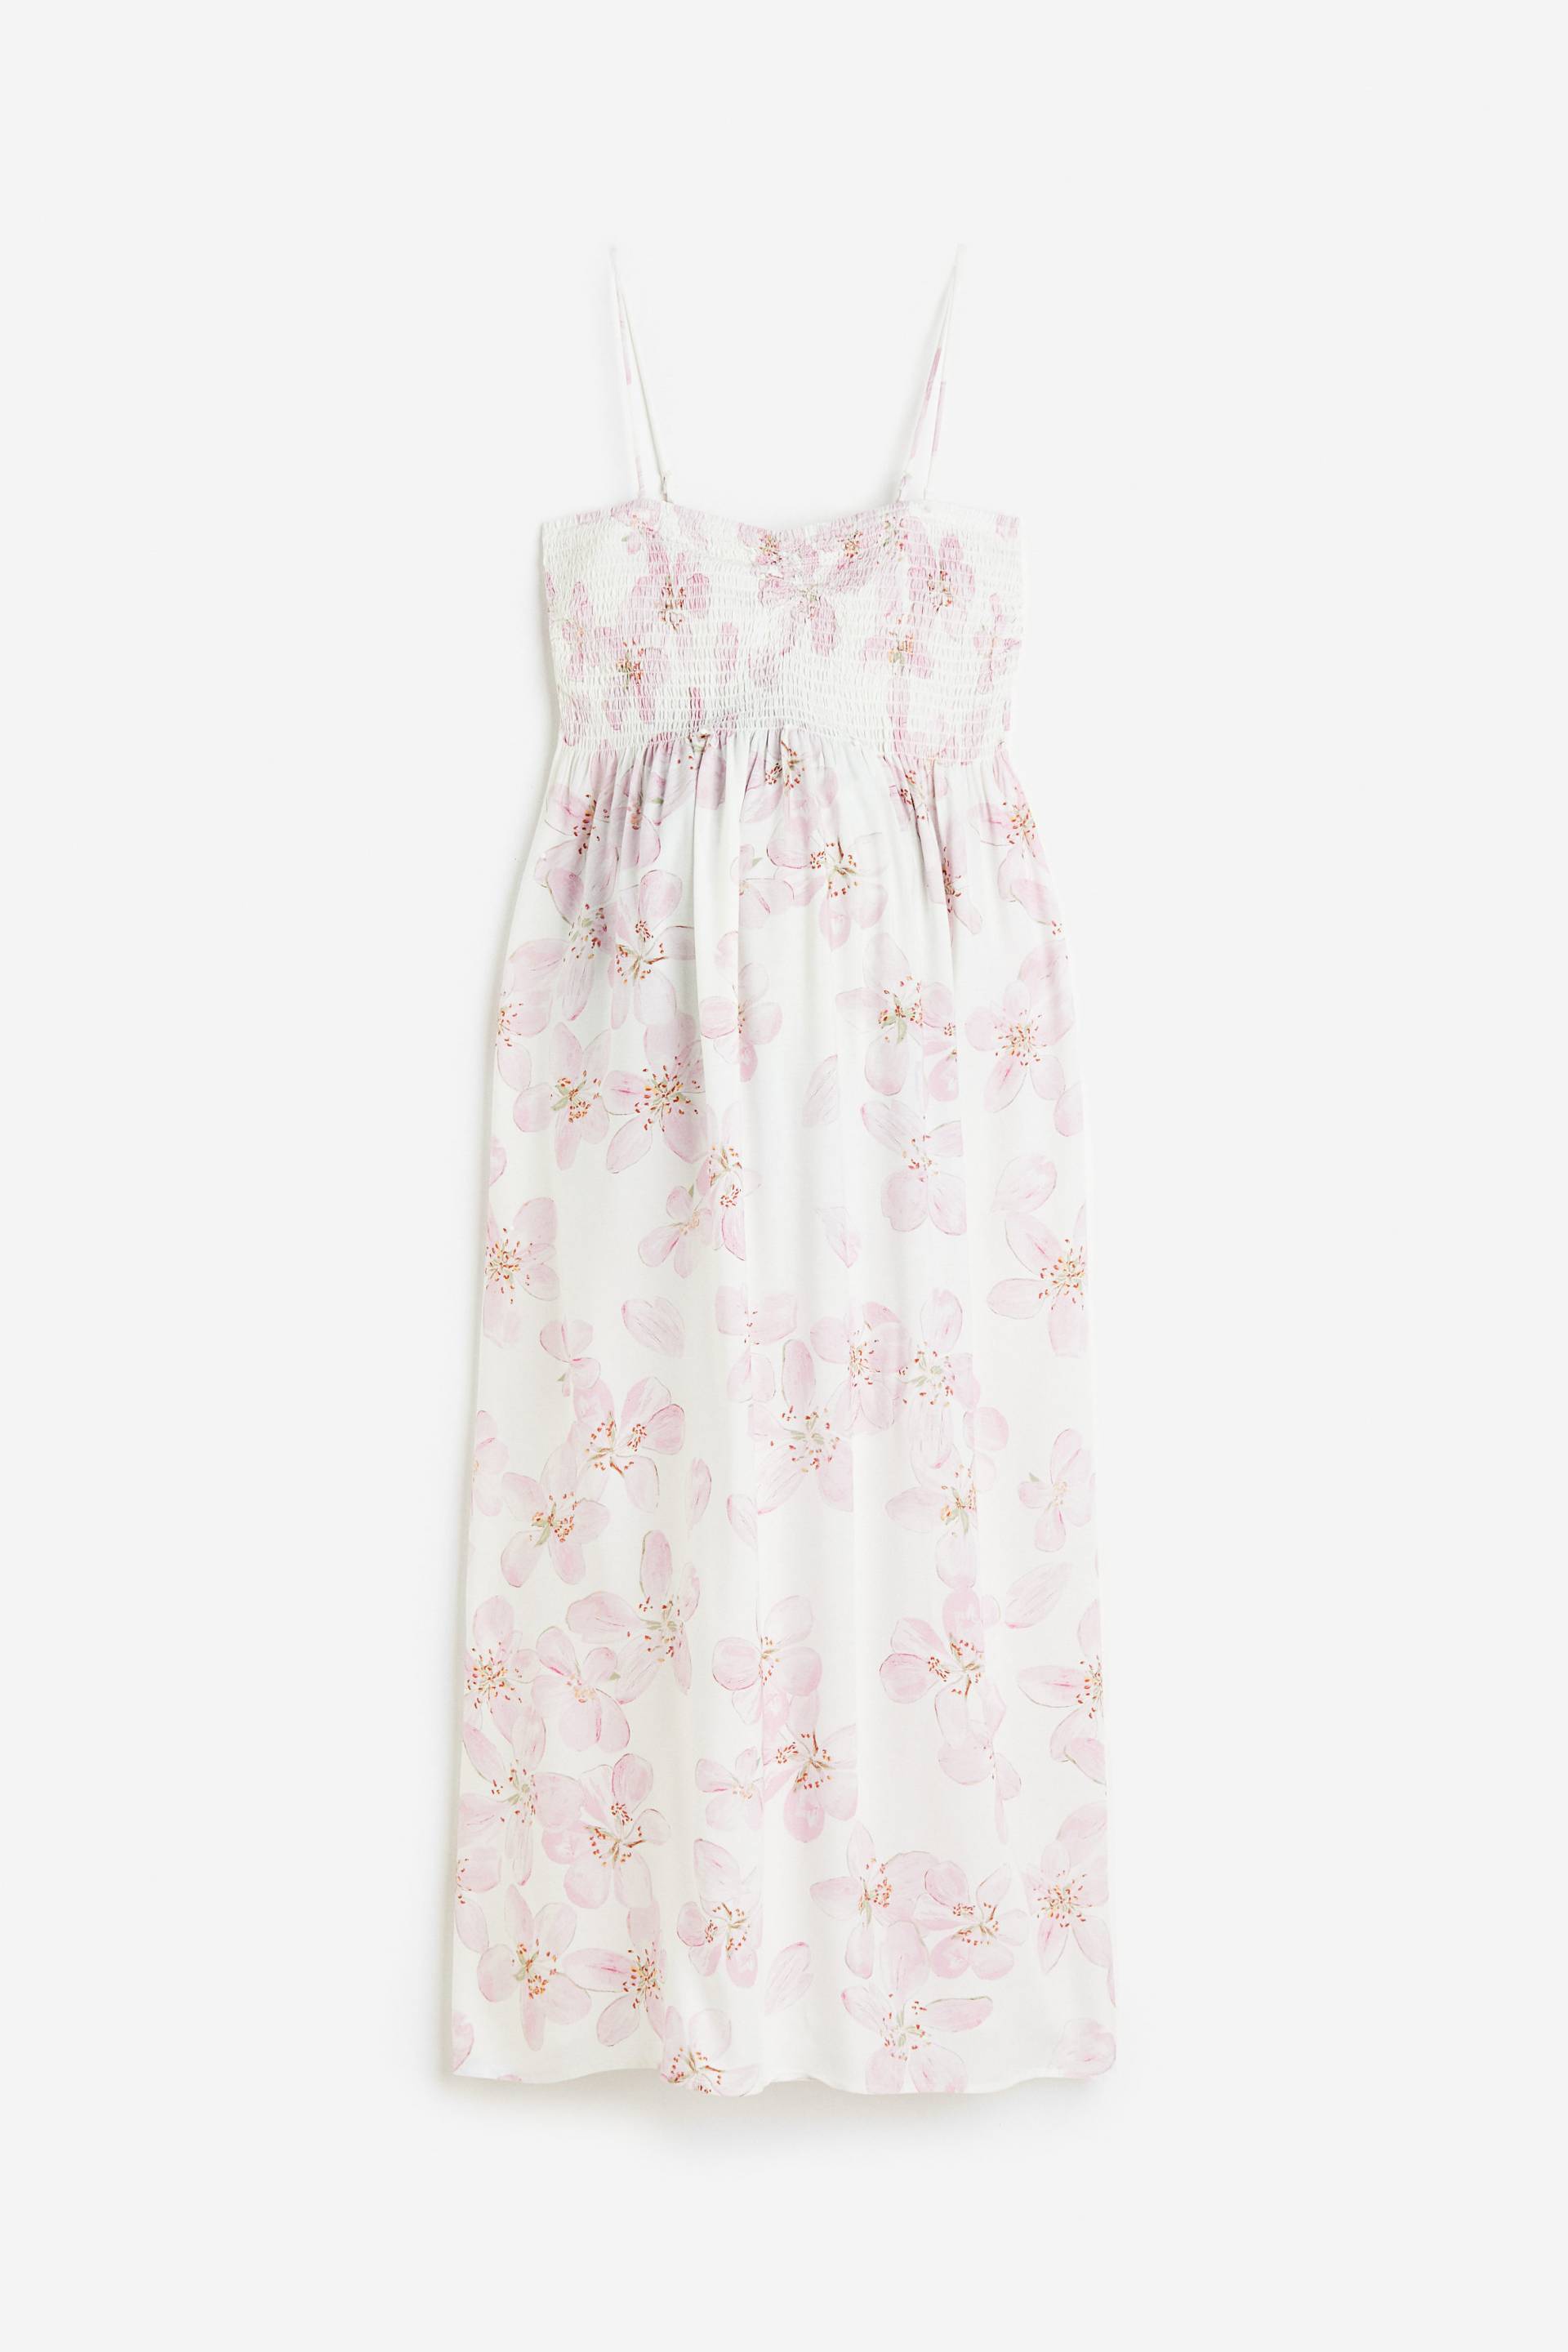 H&M MAMA Gesmoktes Kleid Cremefarben/Rosa geblümt, Kleider in Größe XXL. Farbe: Cream/pink floral von H&M